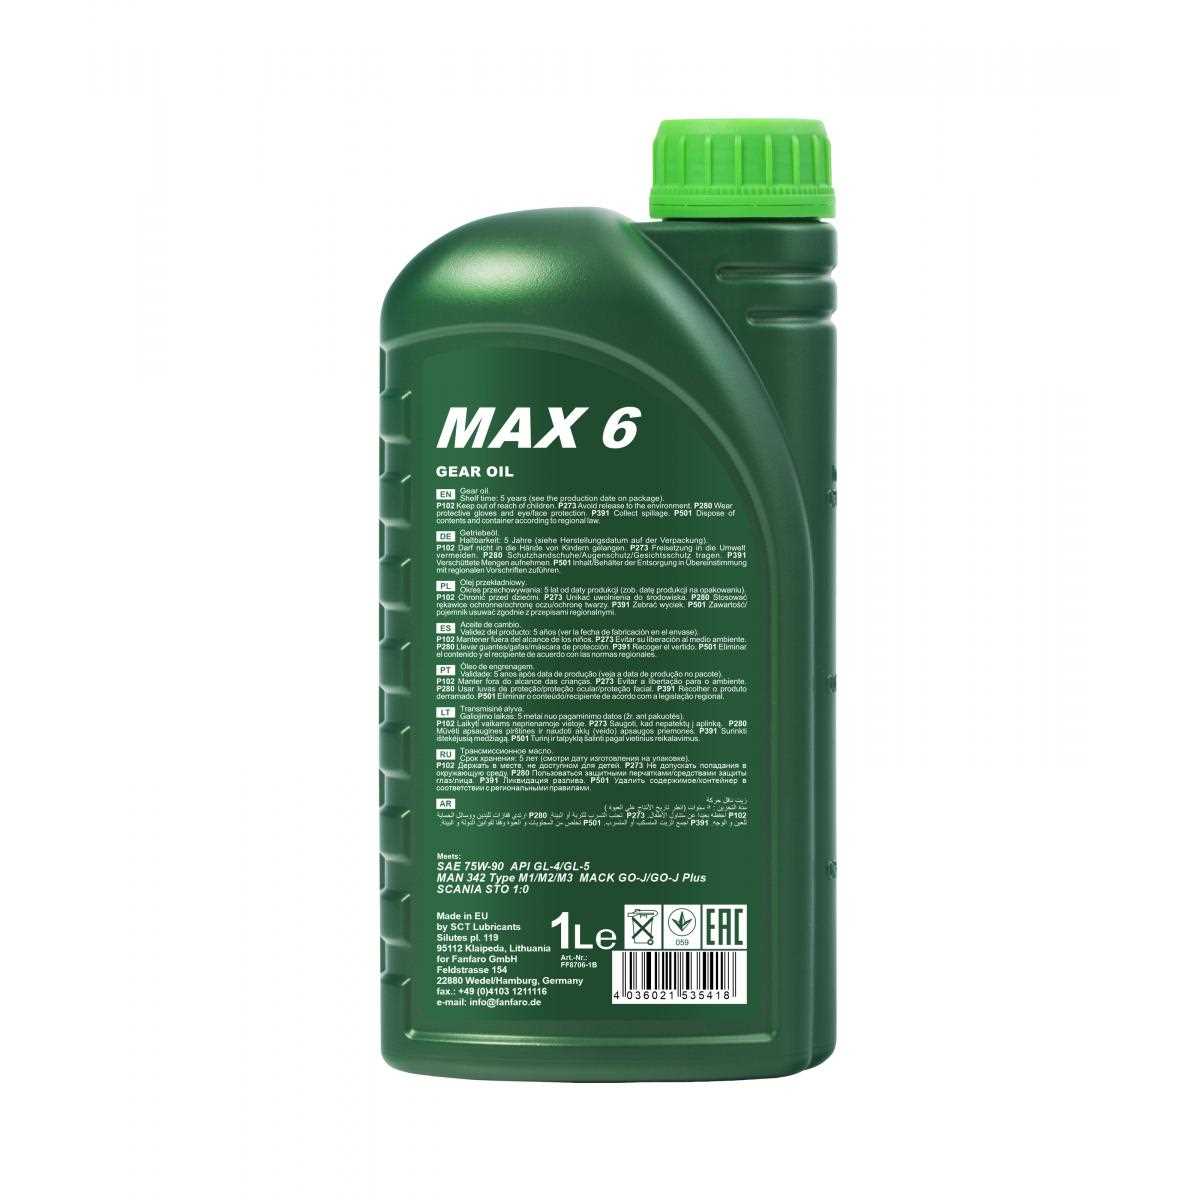 1 Liter FANFARO Getriebeöl MAX 6 75W-90 API GL-4/GL-5 Gear Oil Öl